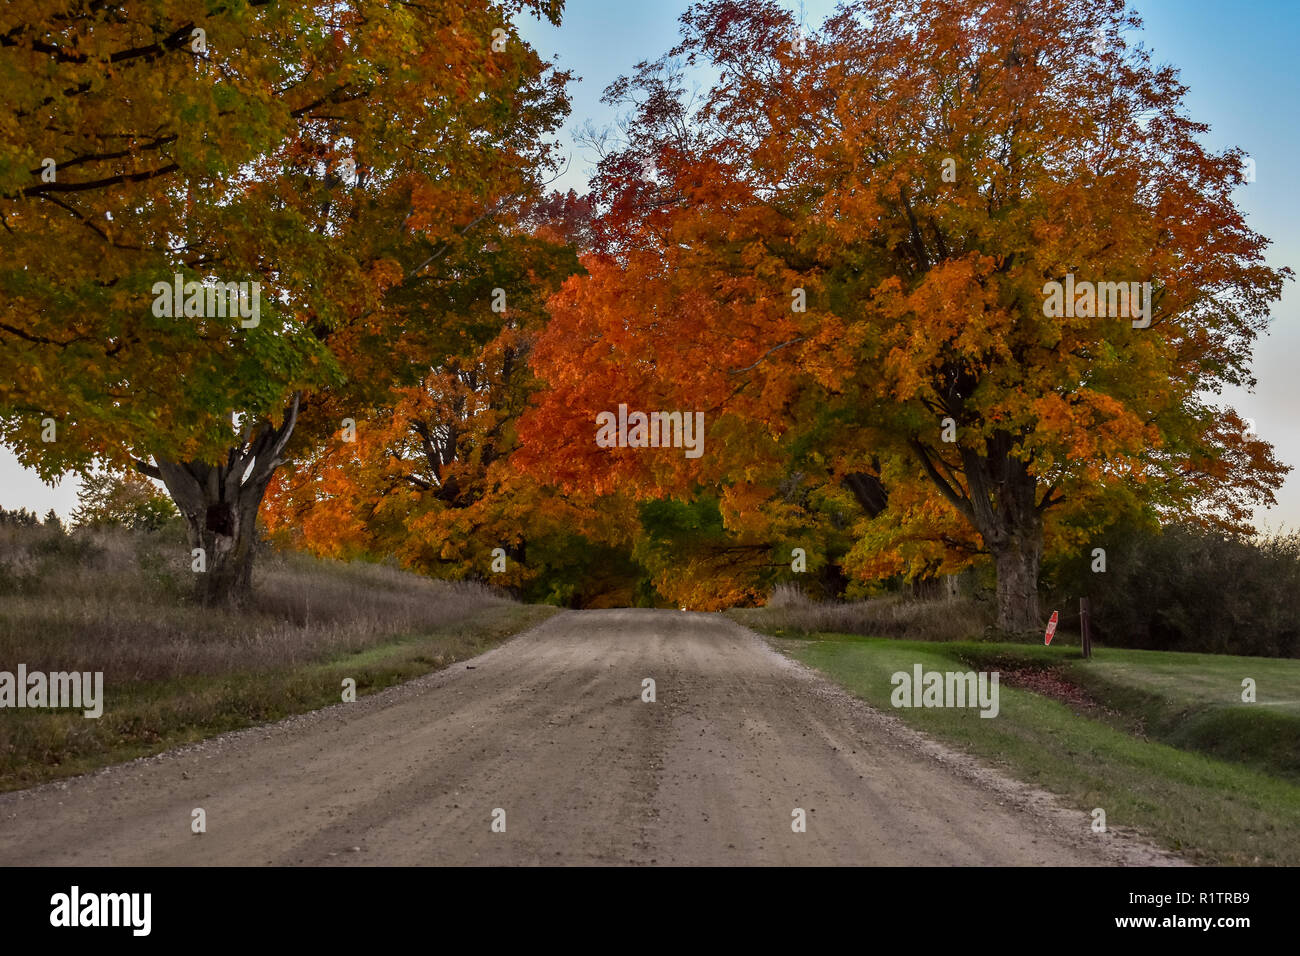 Routes de campagne, les couleurs de l'automne commençaient à afficher dans la zone. Cette route est au milieu d'une chasse de l'état des terres. Prise en Octobre Banque D'Images